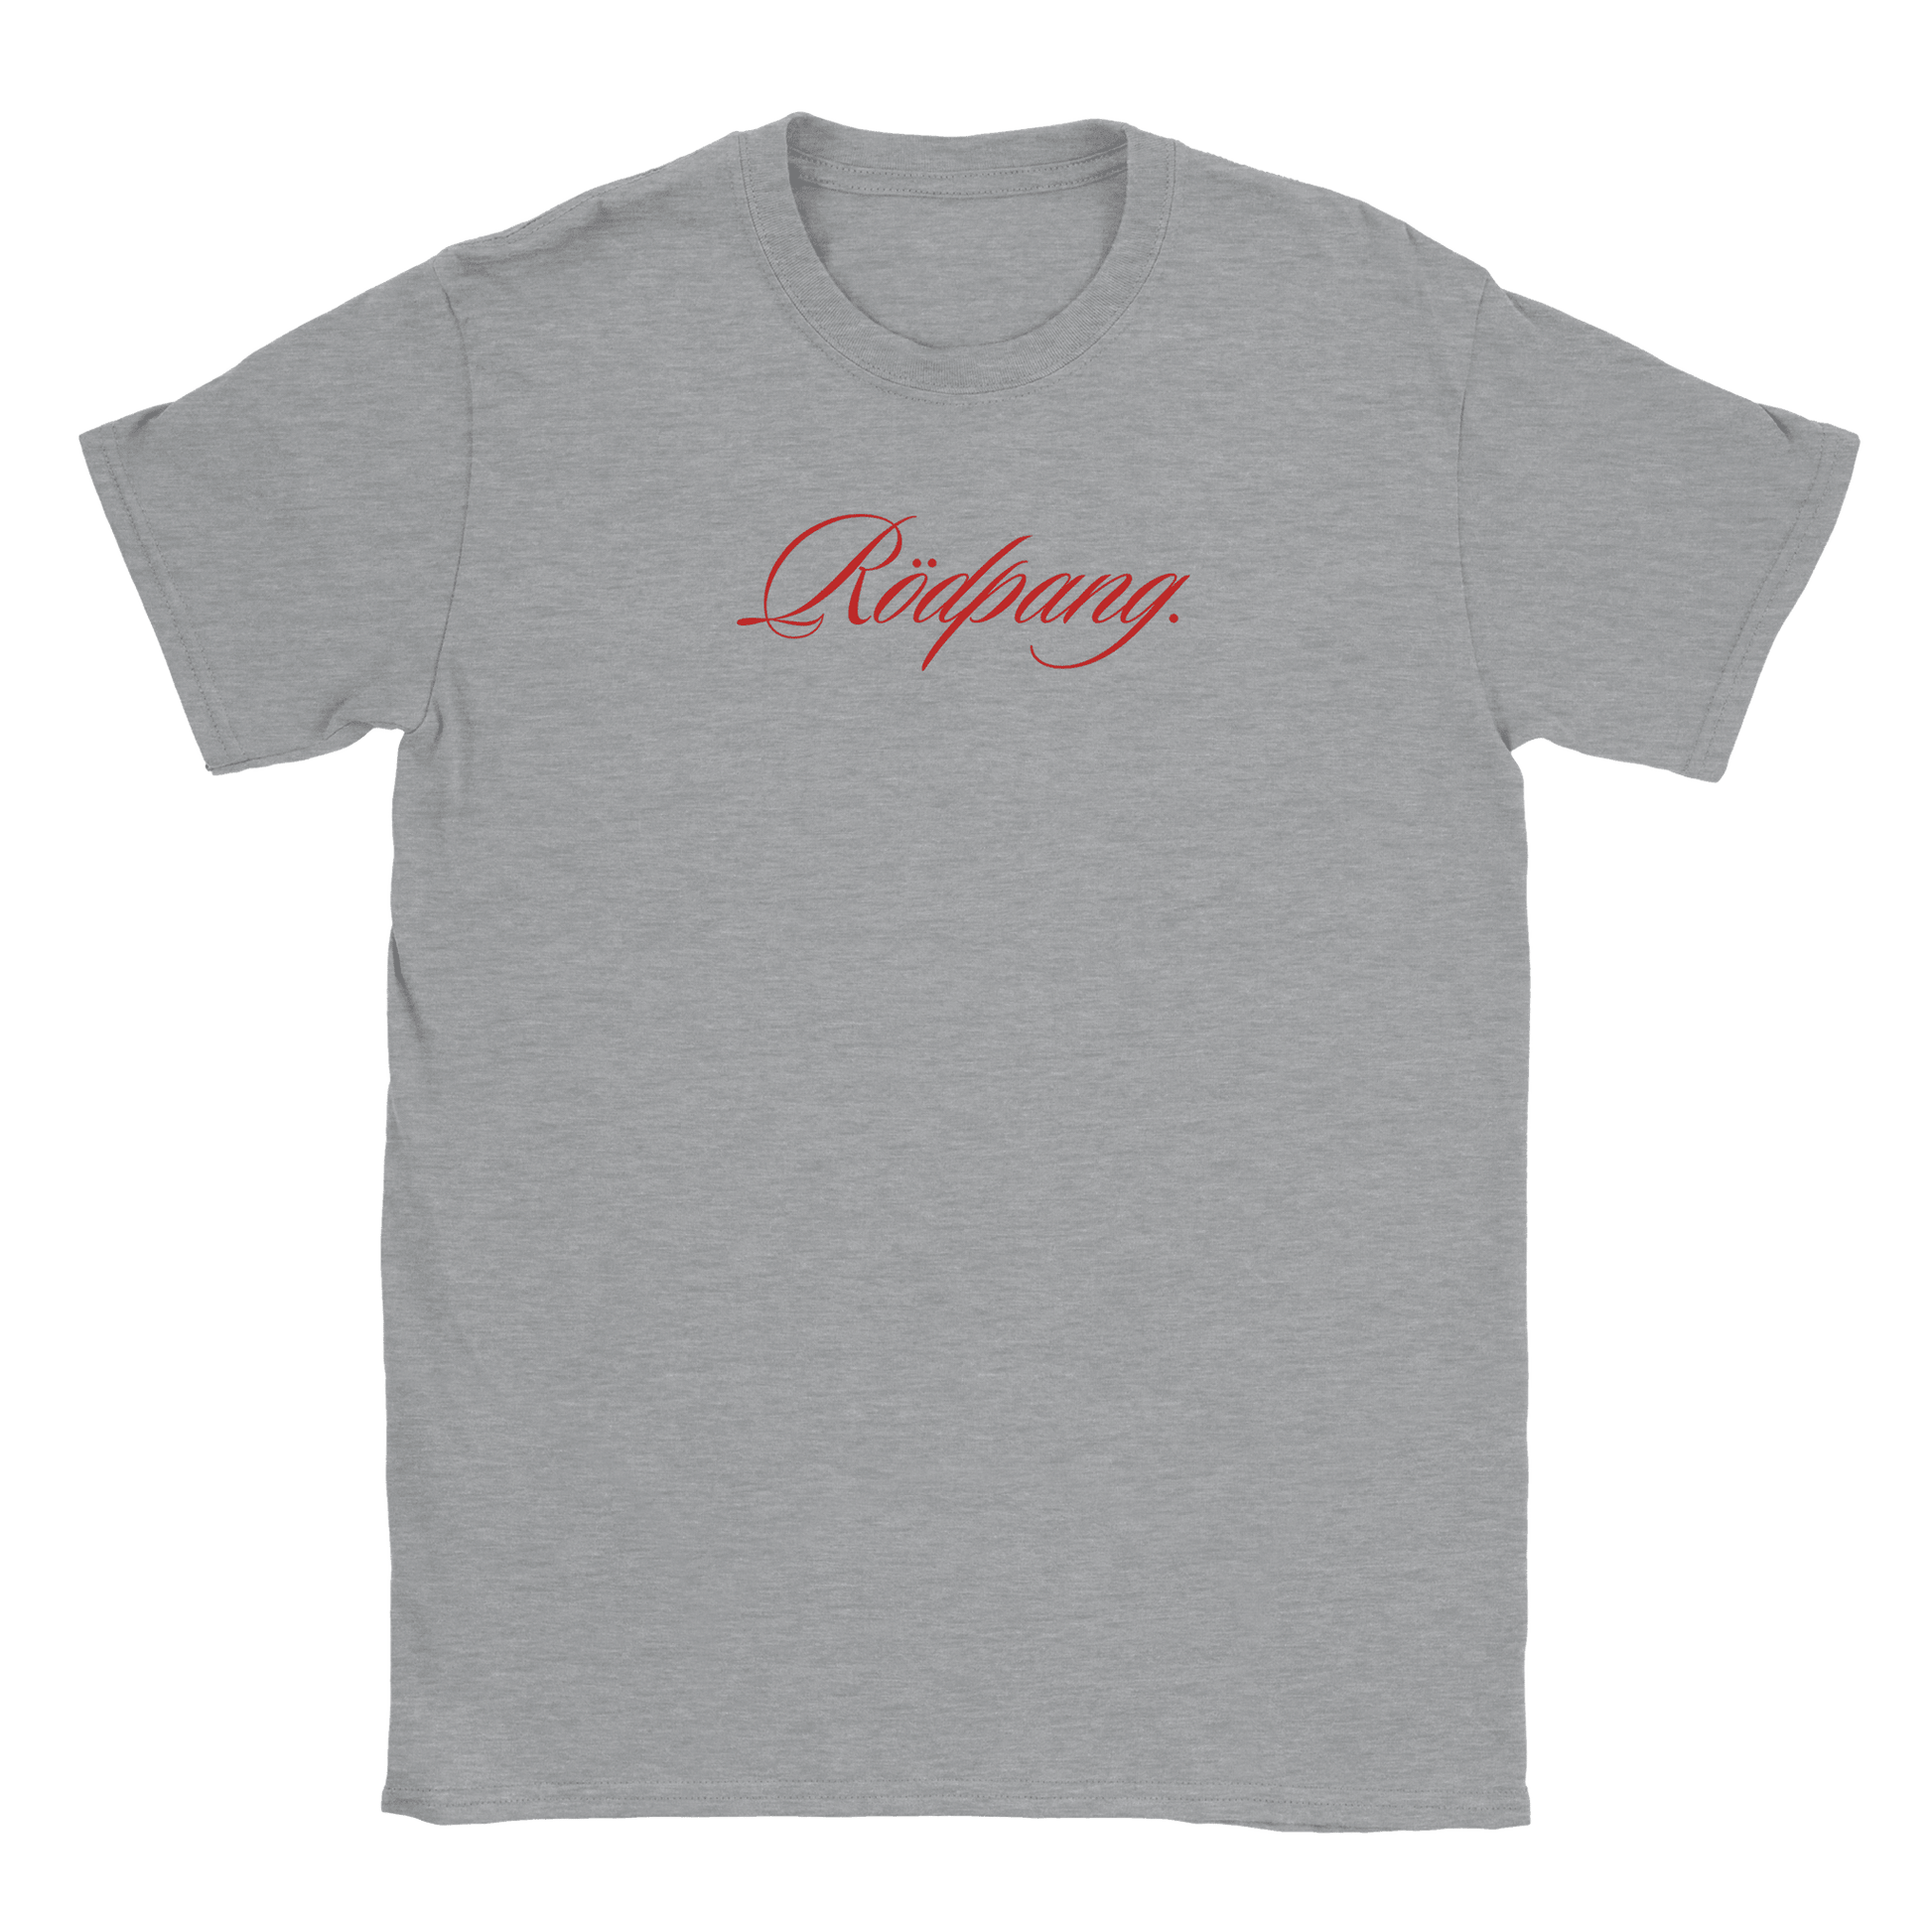 Rödpang - T-shirt Grå